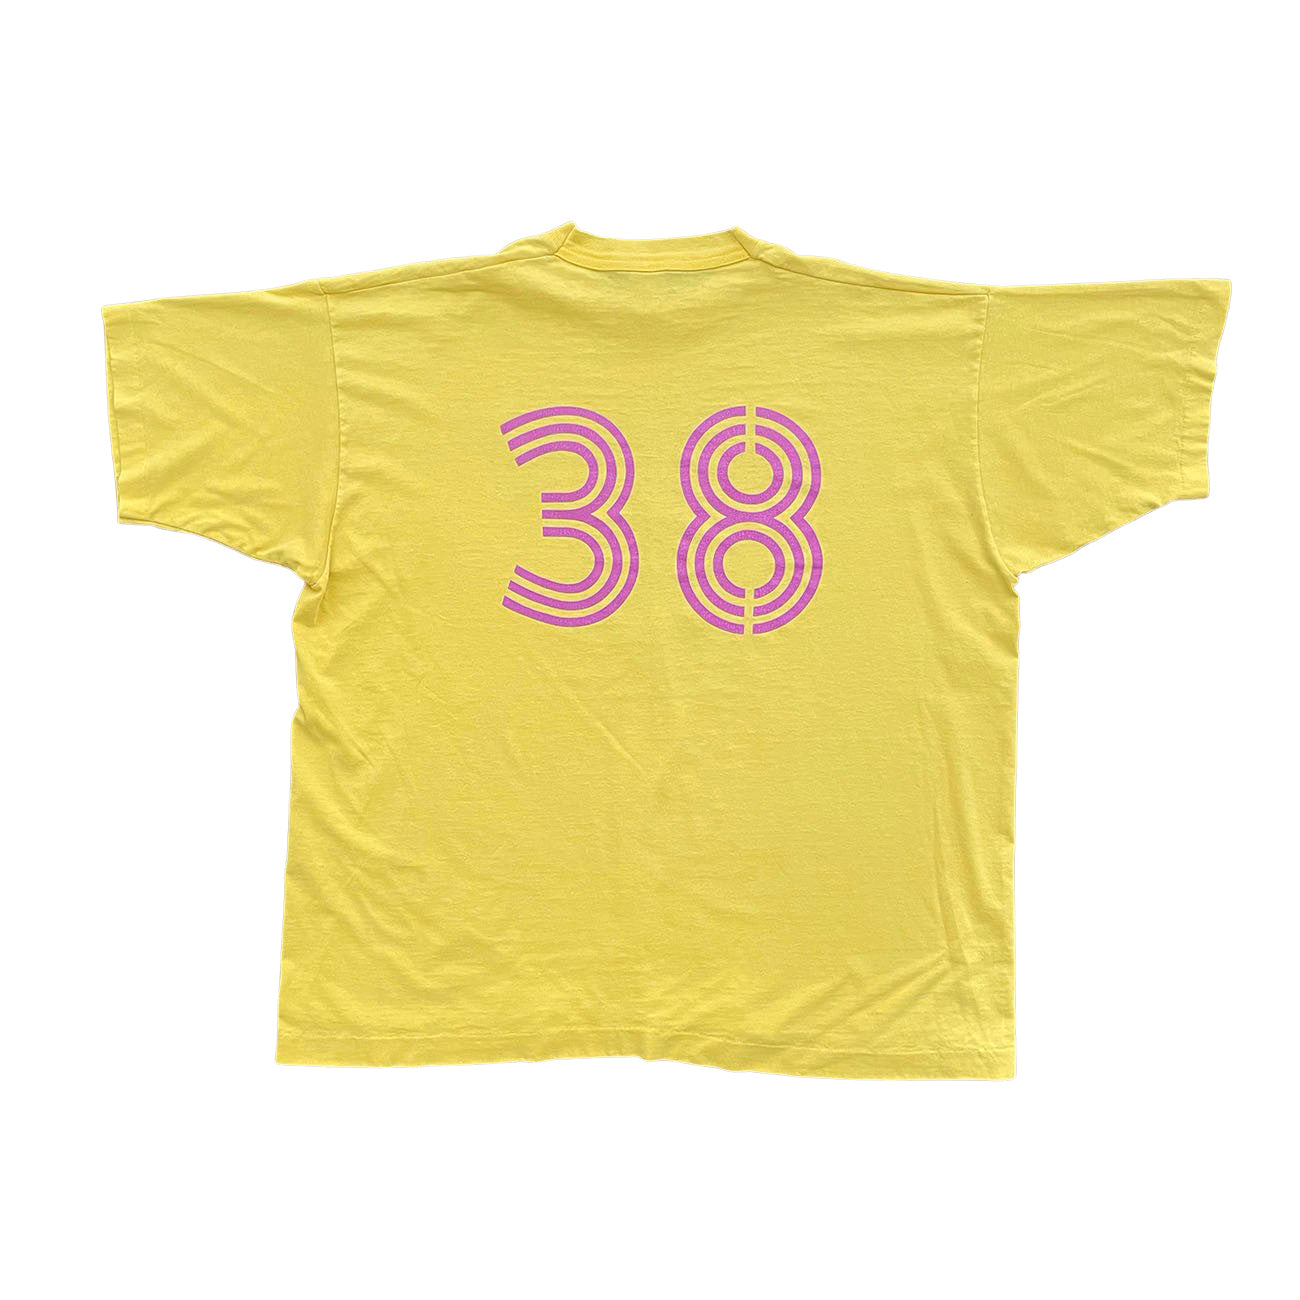 USASL "40 and Still Tickin" T-Shirt - XL